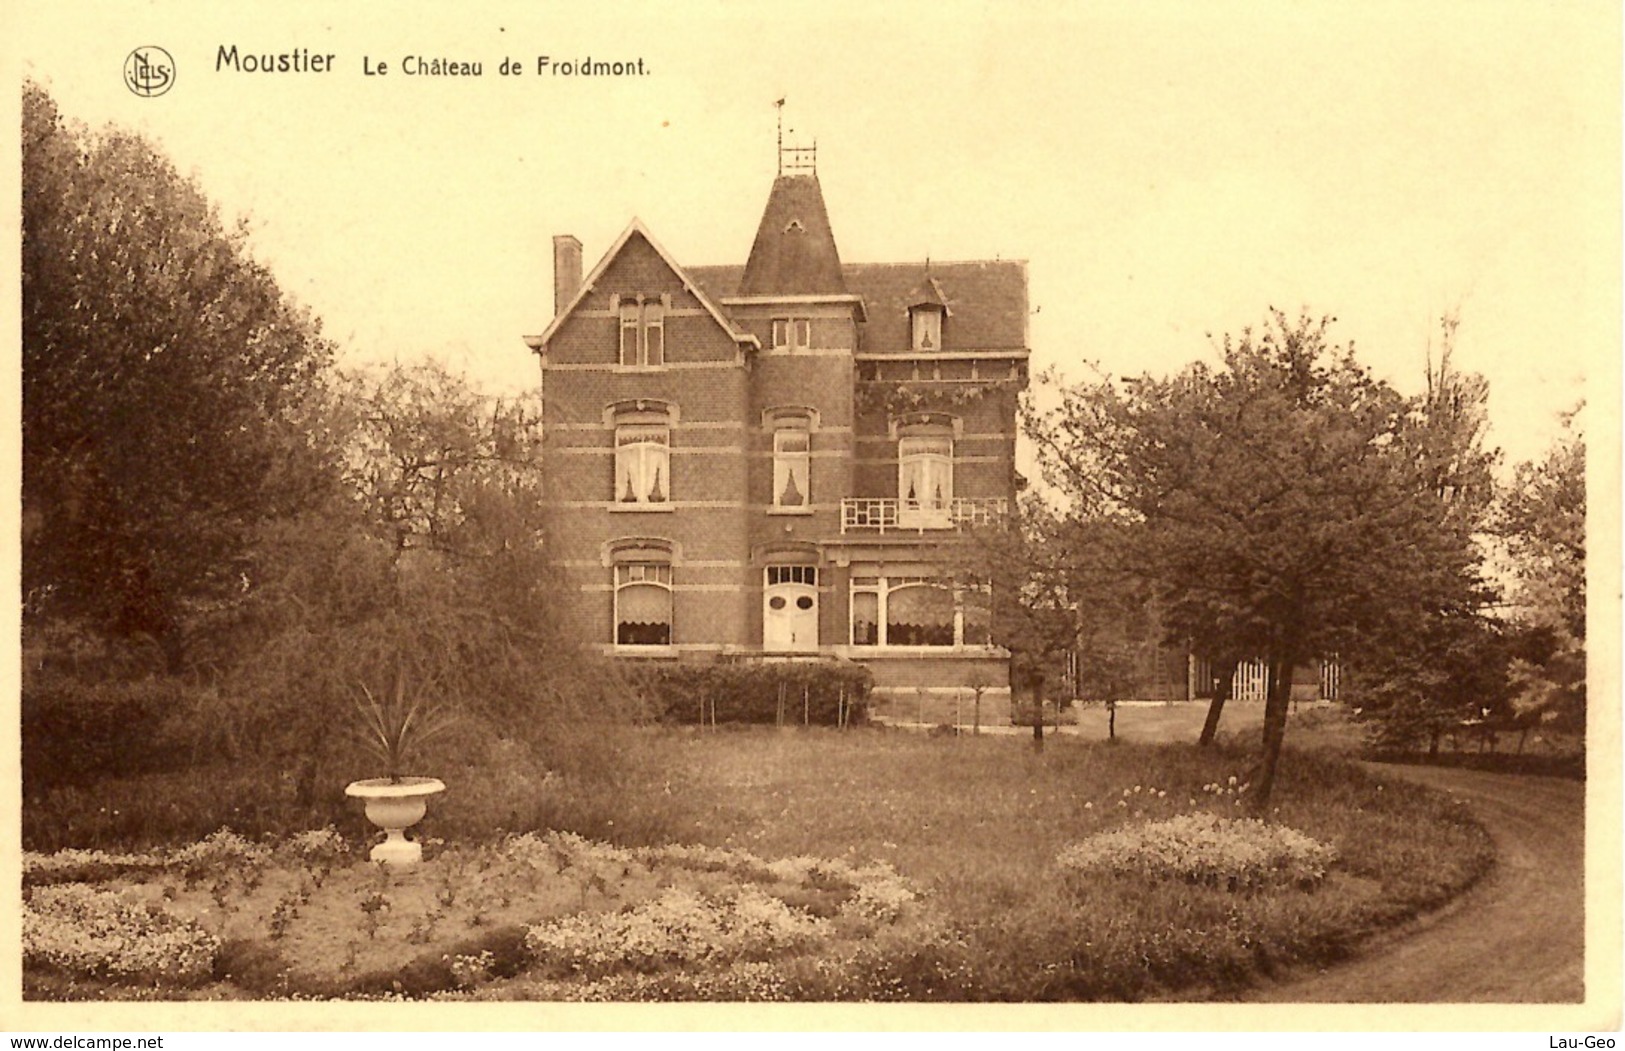 Moustier. (Jemeppe-sur-Sambre) Le Château De Froidmont - Jemeppe-sur-Sambre